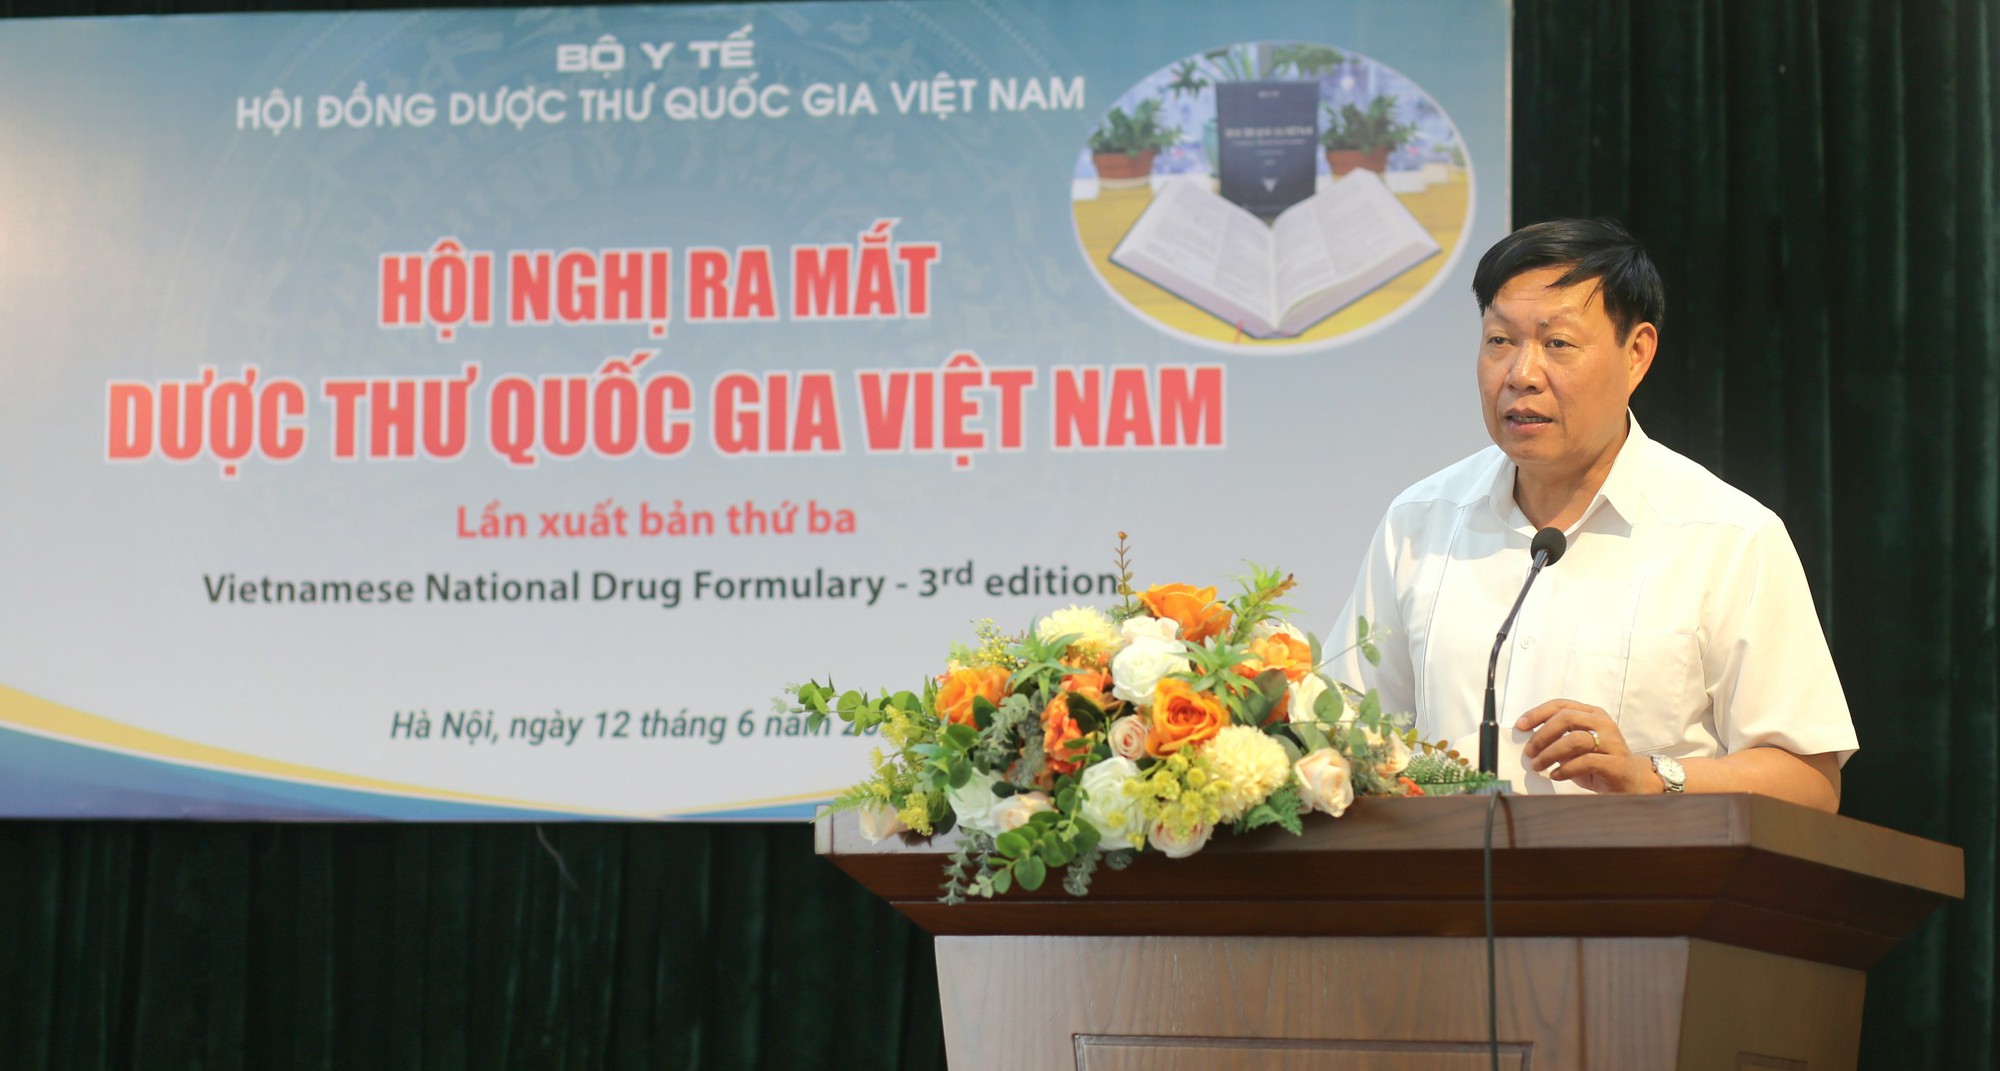 Ra mắt Dược thư Quốc gia Việt Nam lần xuất bản thứ ba - Ảnh 1.